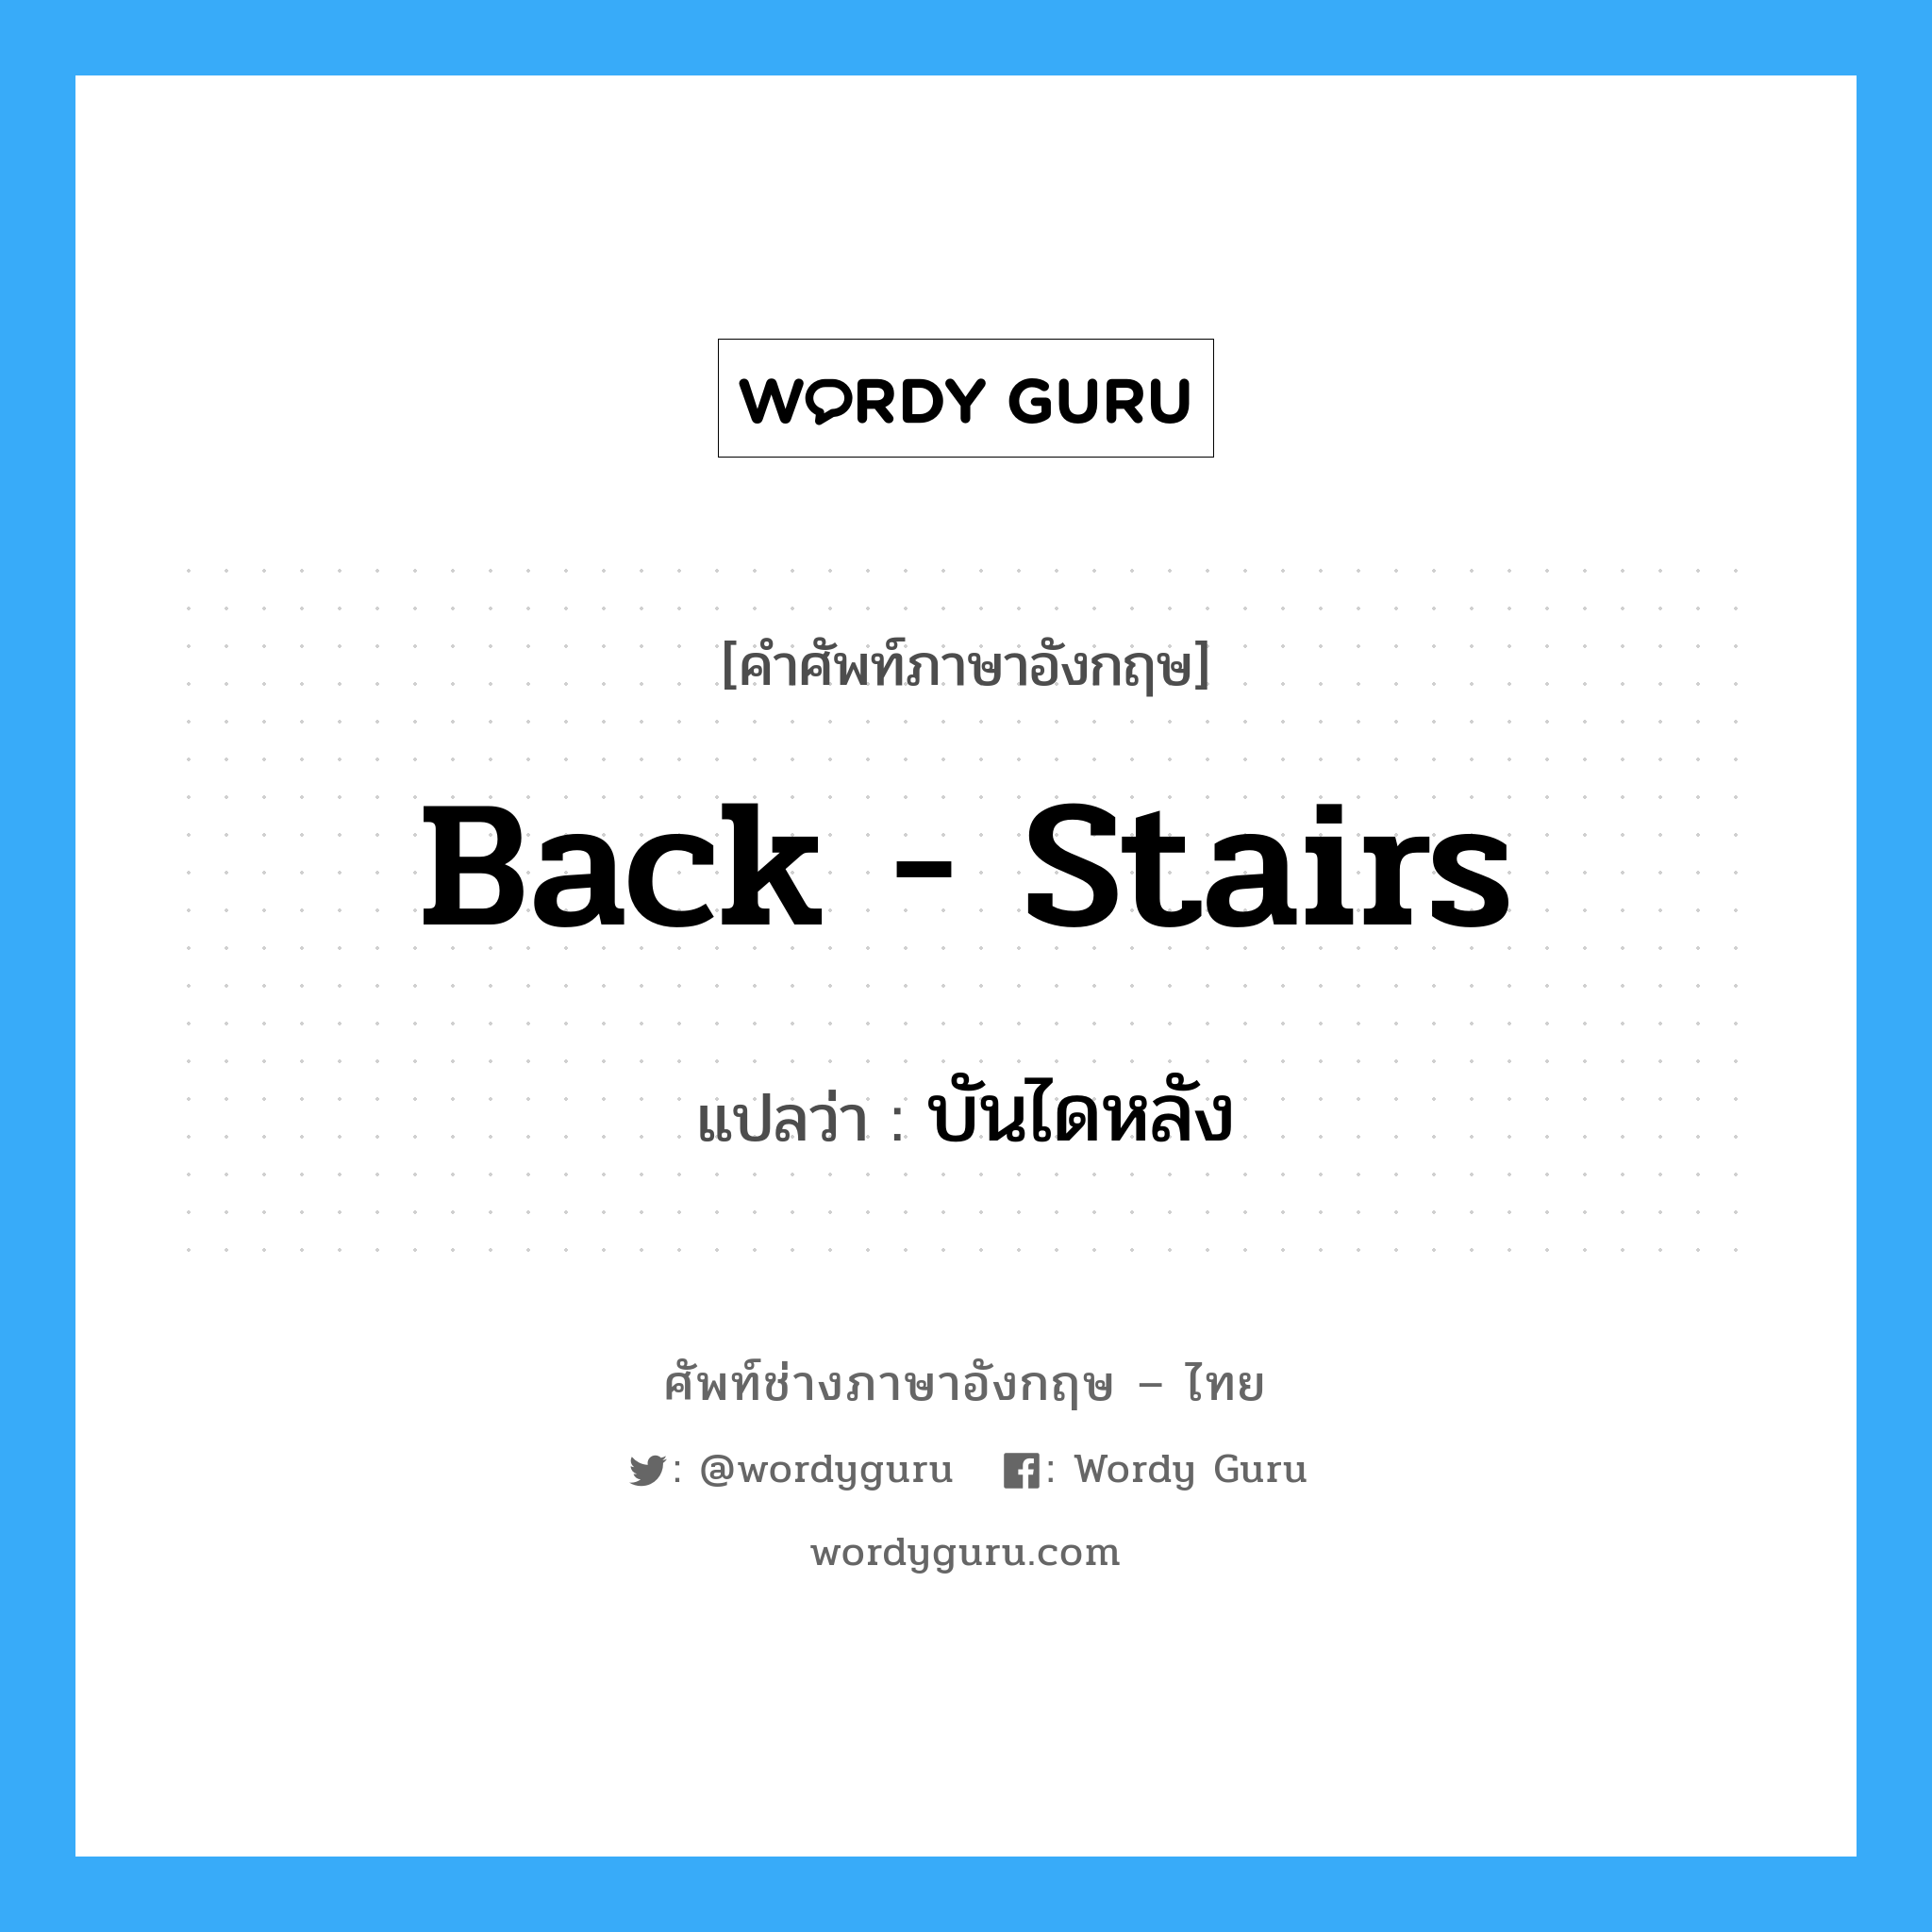 back stairs แปลว่า?, คำศัพท์ช่างภาษาอังกฤษ - ไทย back - stairs คำศัพท์ภาษาอังกฤษ back - stairs แปลว่า บันไดหลัง